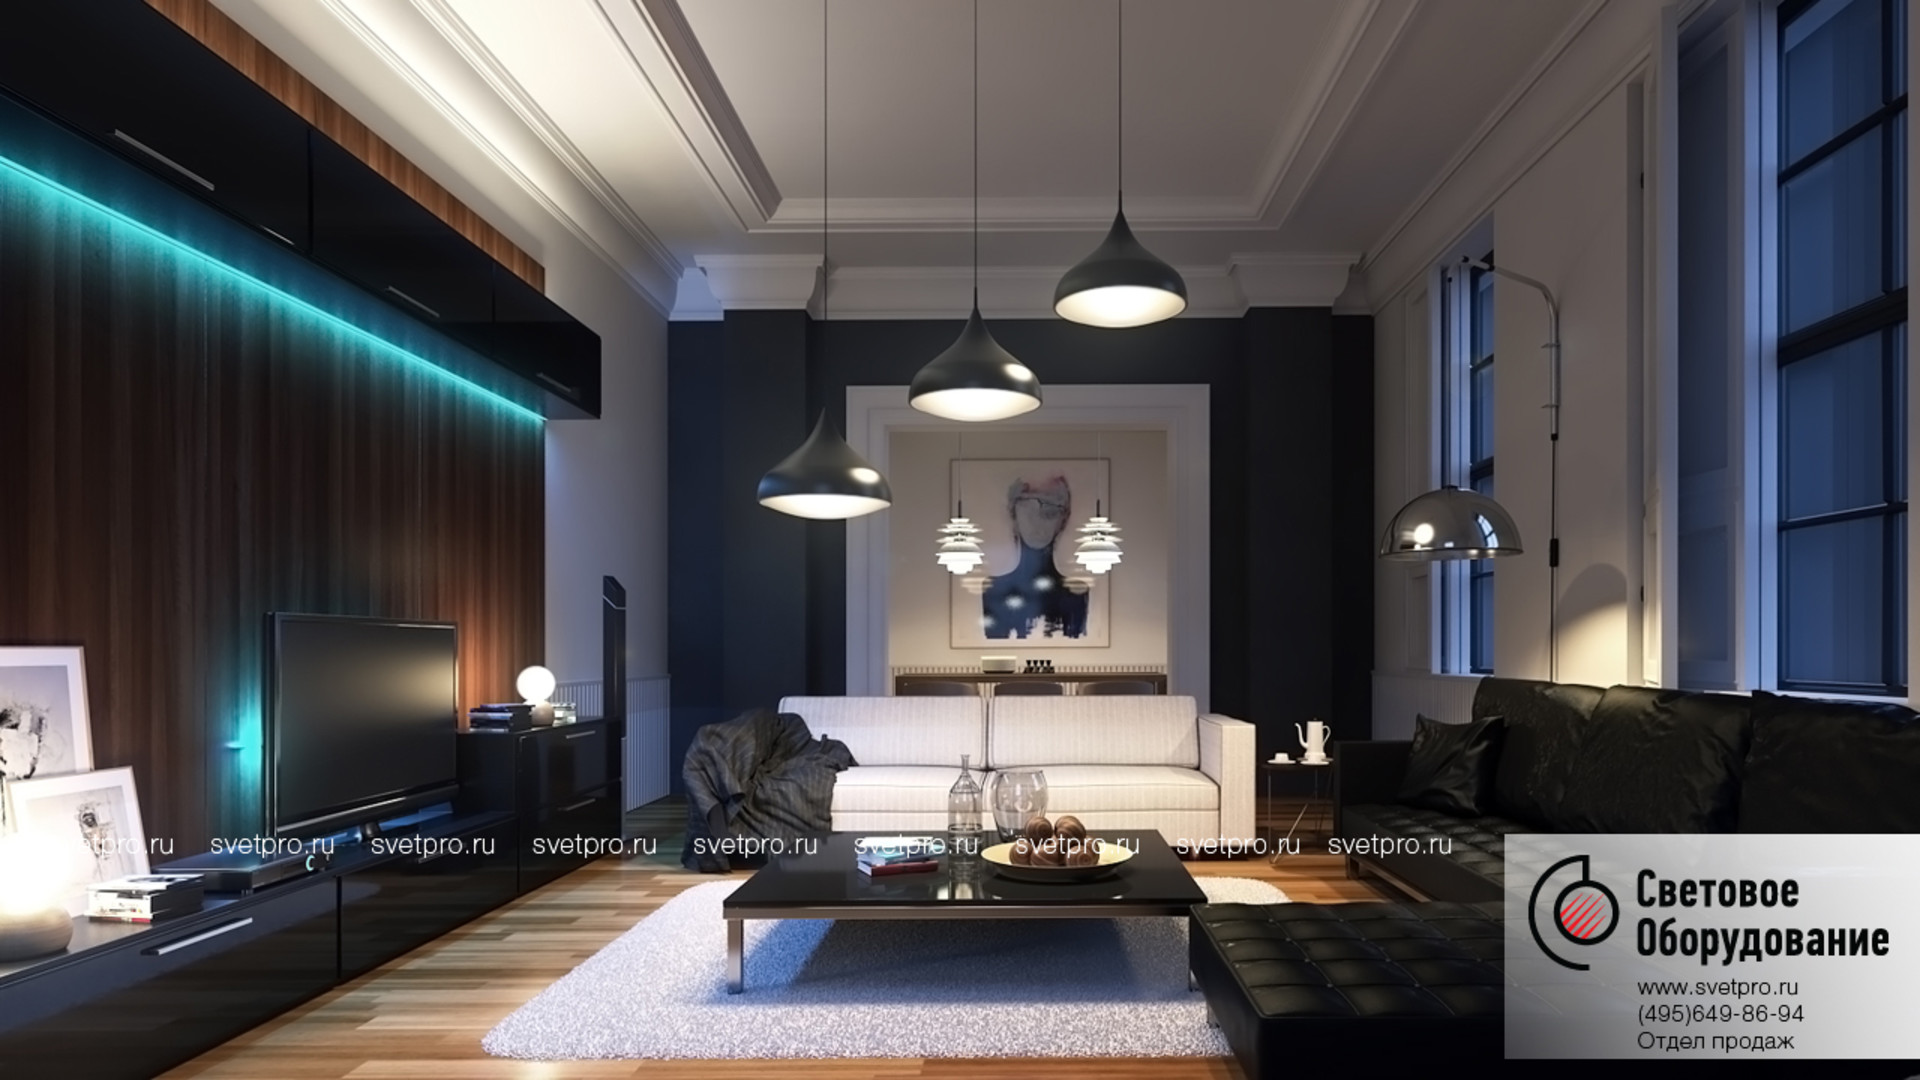 Проектирование освещения теплый свет. Рендер интерьера в 3ds Max. Interior Lighting 3ds Max. Современное освещение в интерьере. Подсветка в интерьере квартиры.